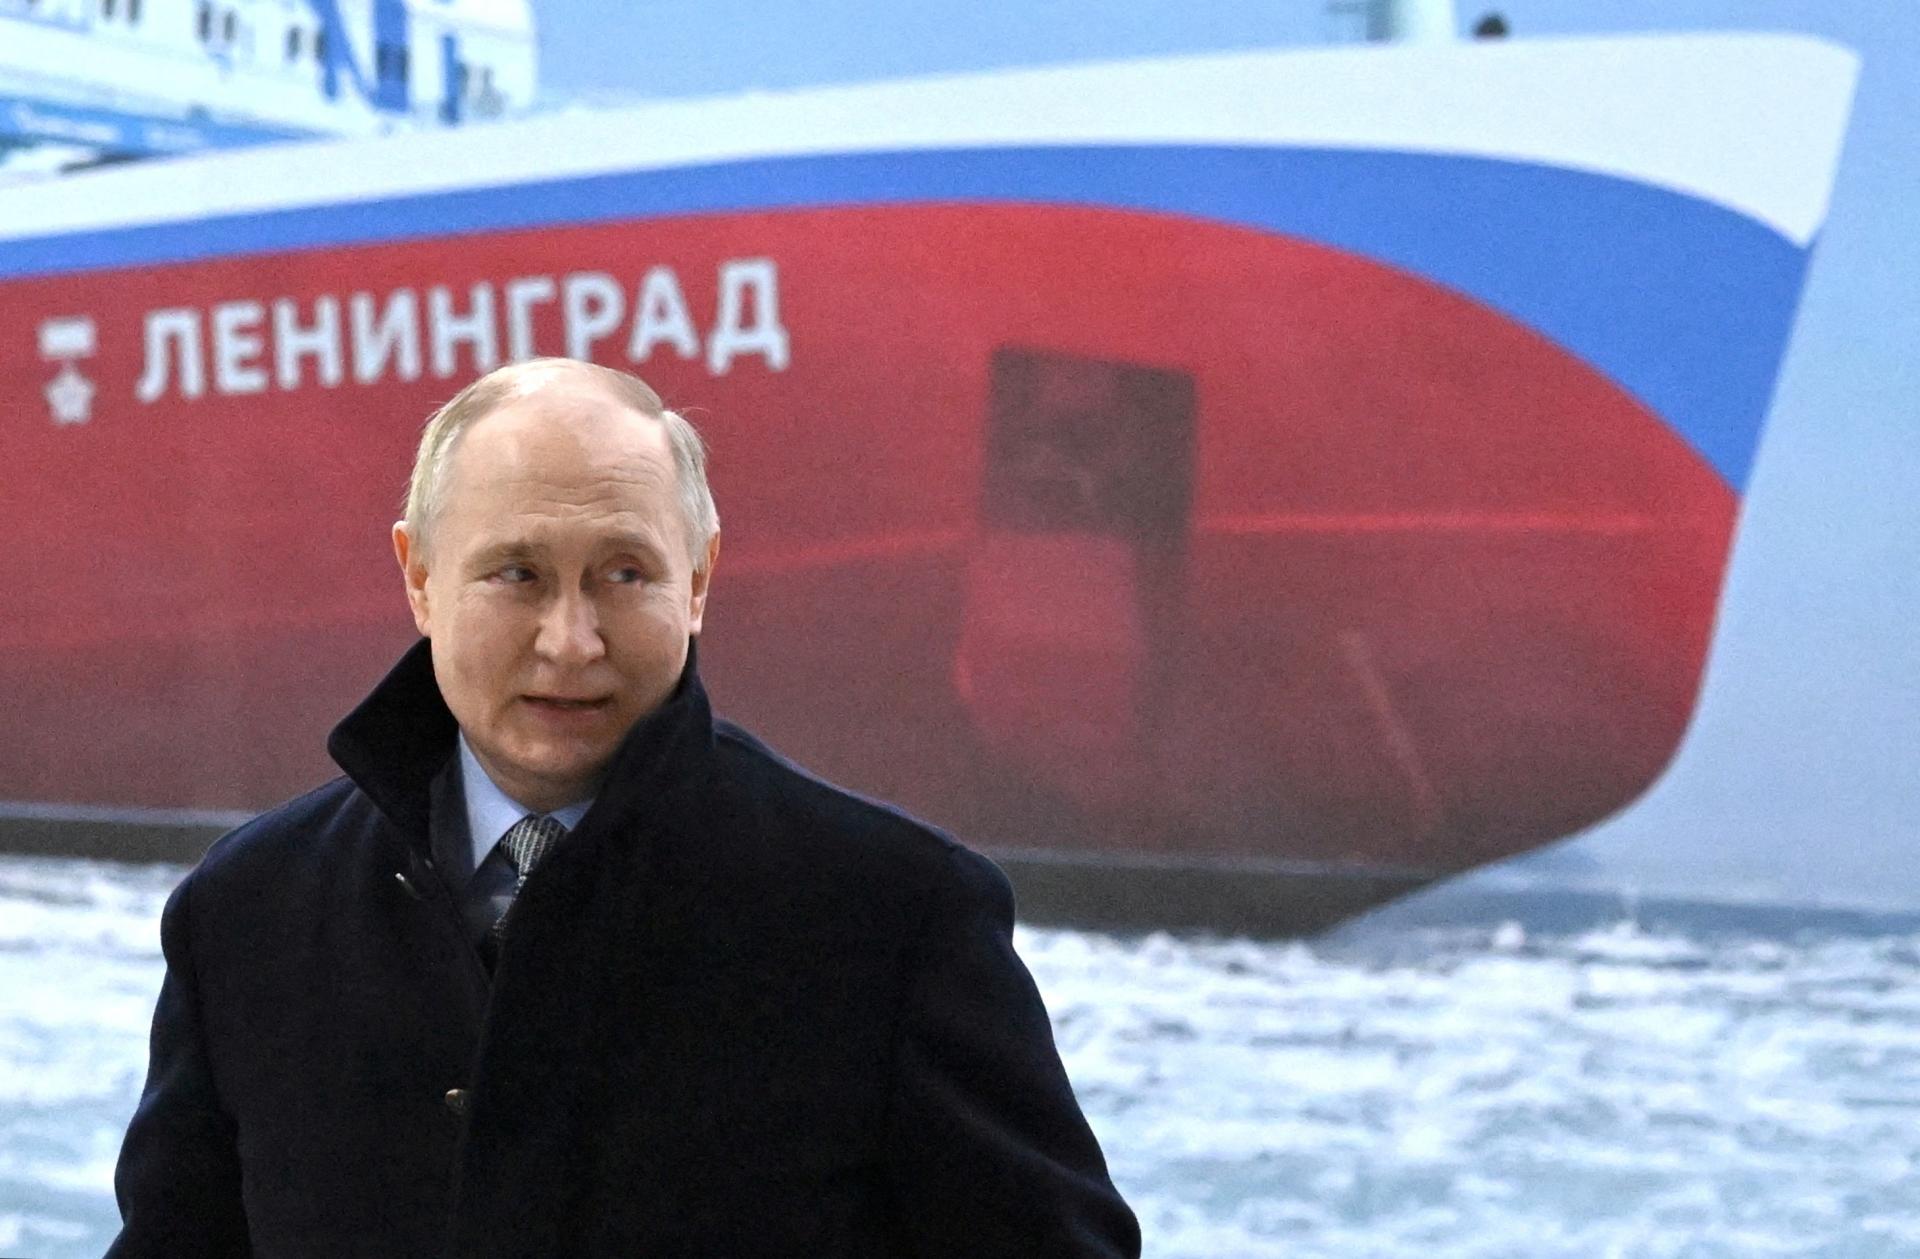 Kremeľ hrozí vojenskou reakciou. Nepáči sa mu plán na rozmiestnenie rakiet v Nemecku